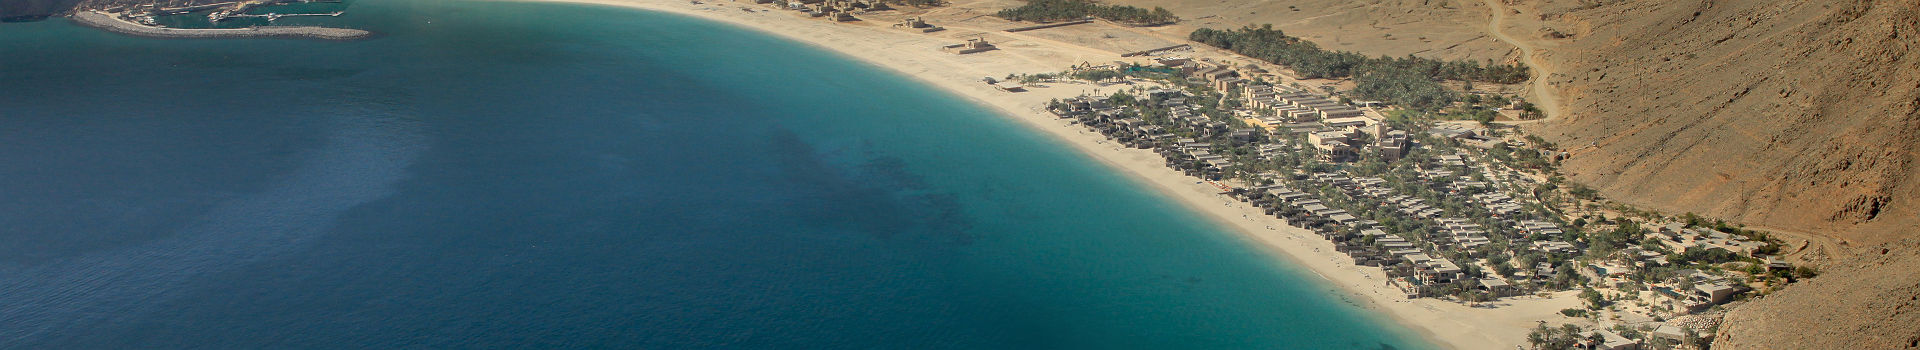 Hôtel Six Senses Zighy Bay - Vue aérienne sur le resort